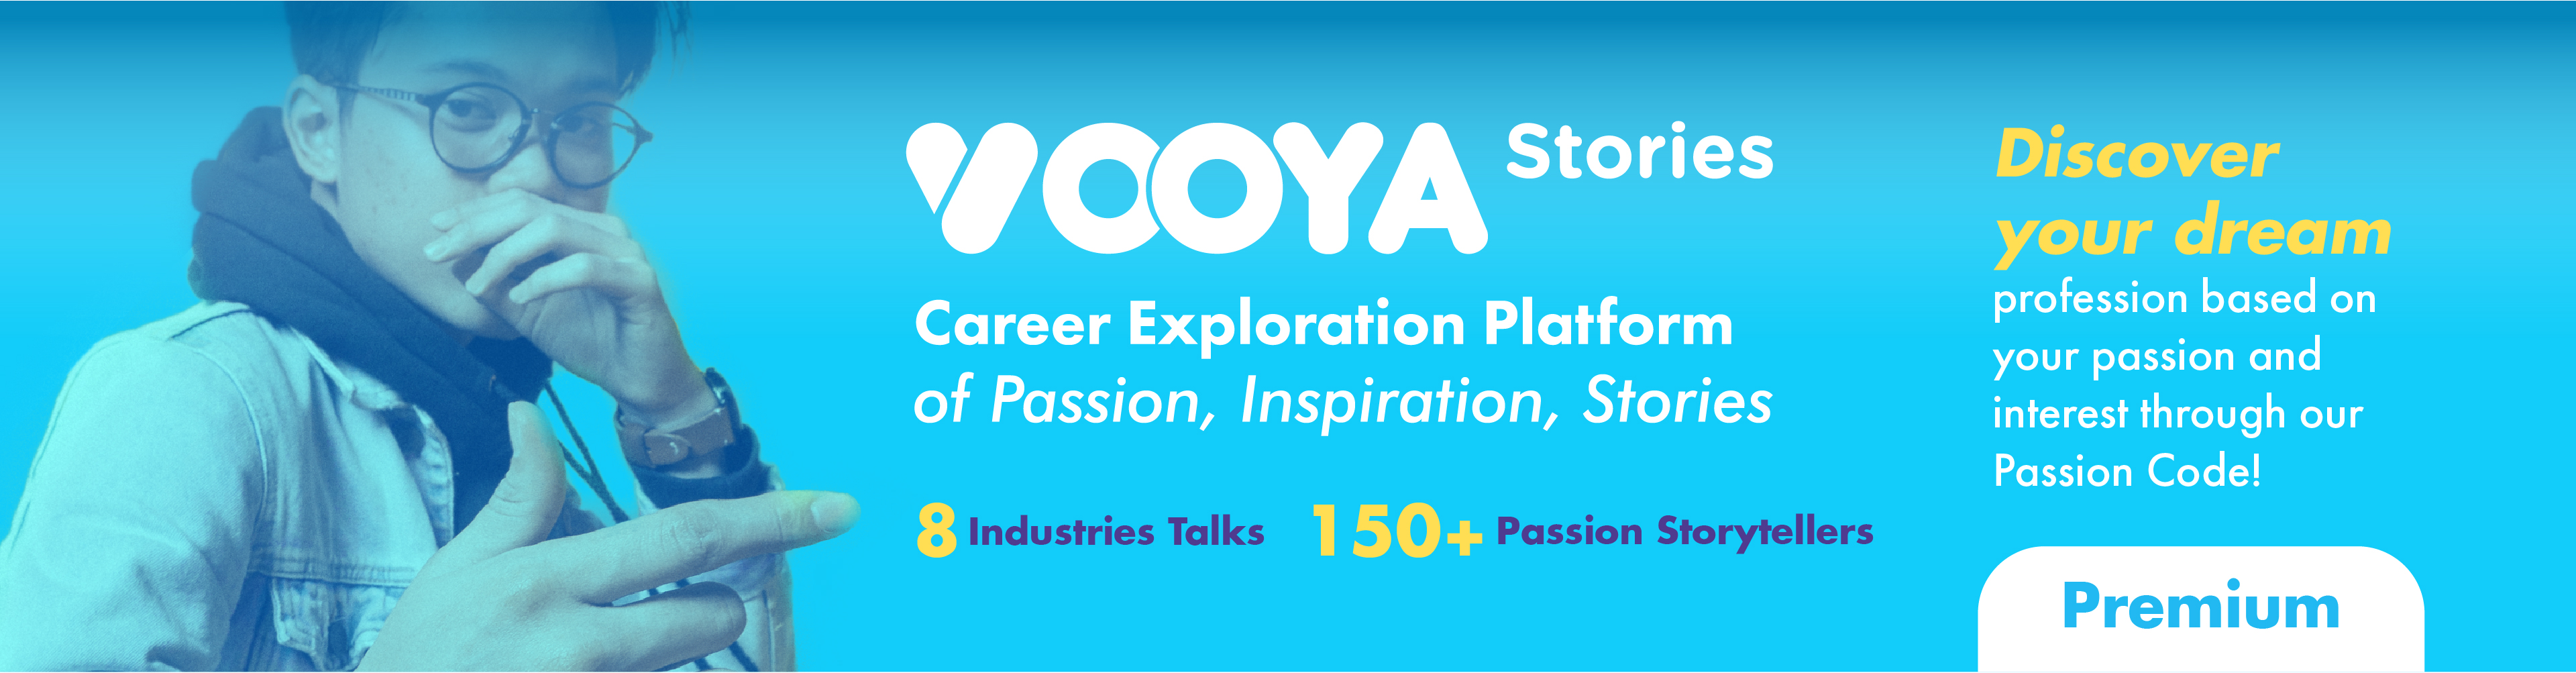 Vooya Stories - Premium